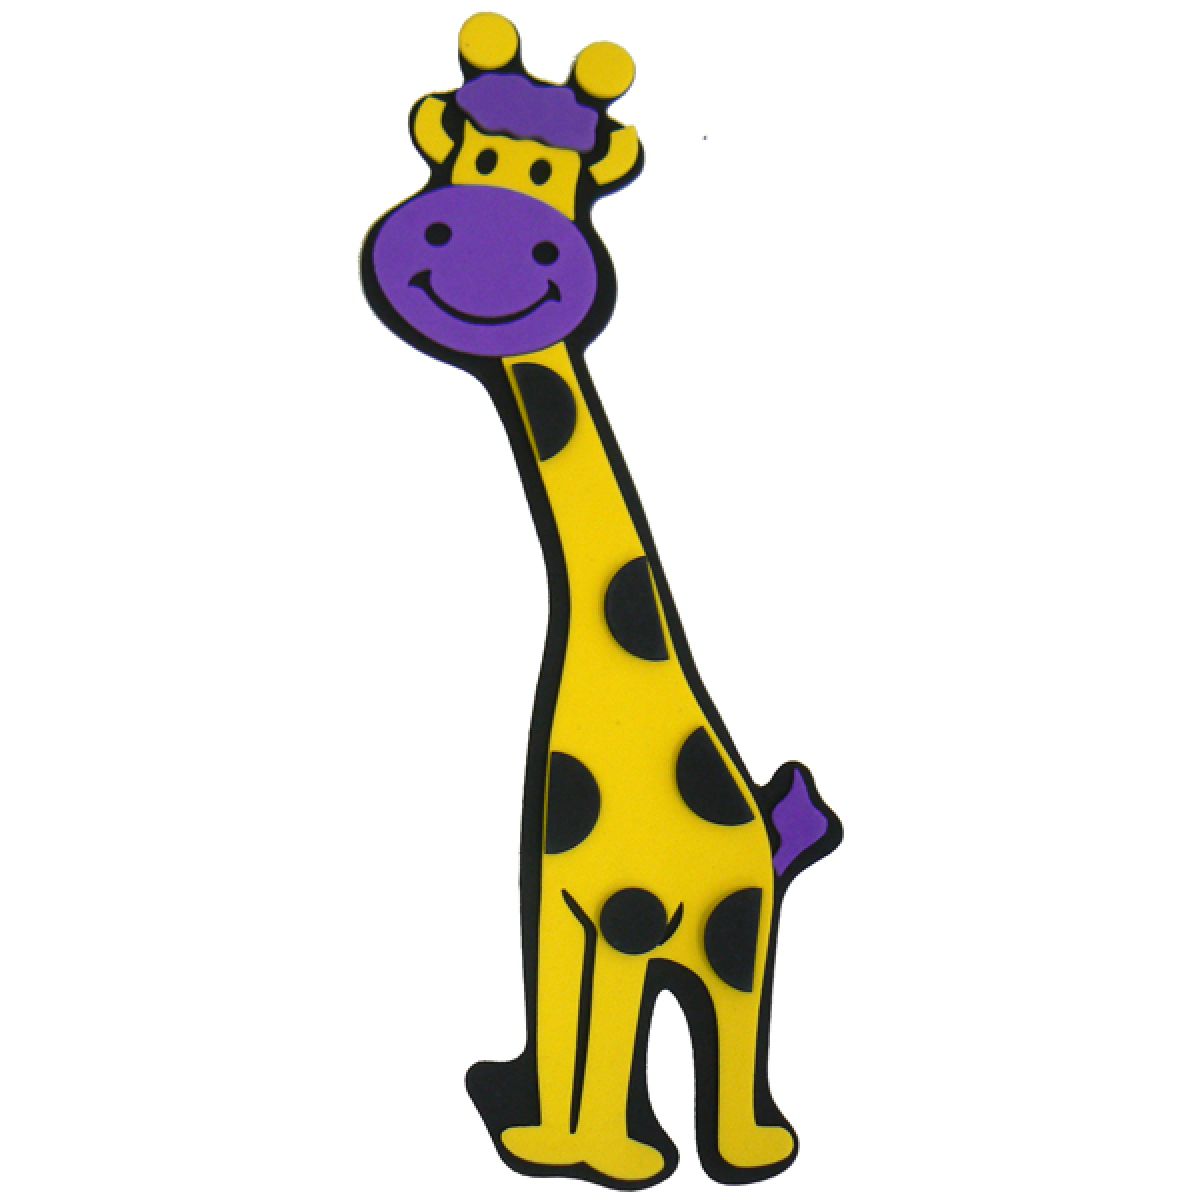 Dekorace Žirafa